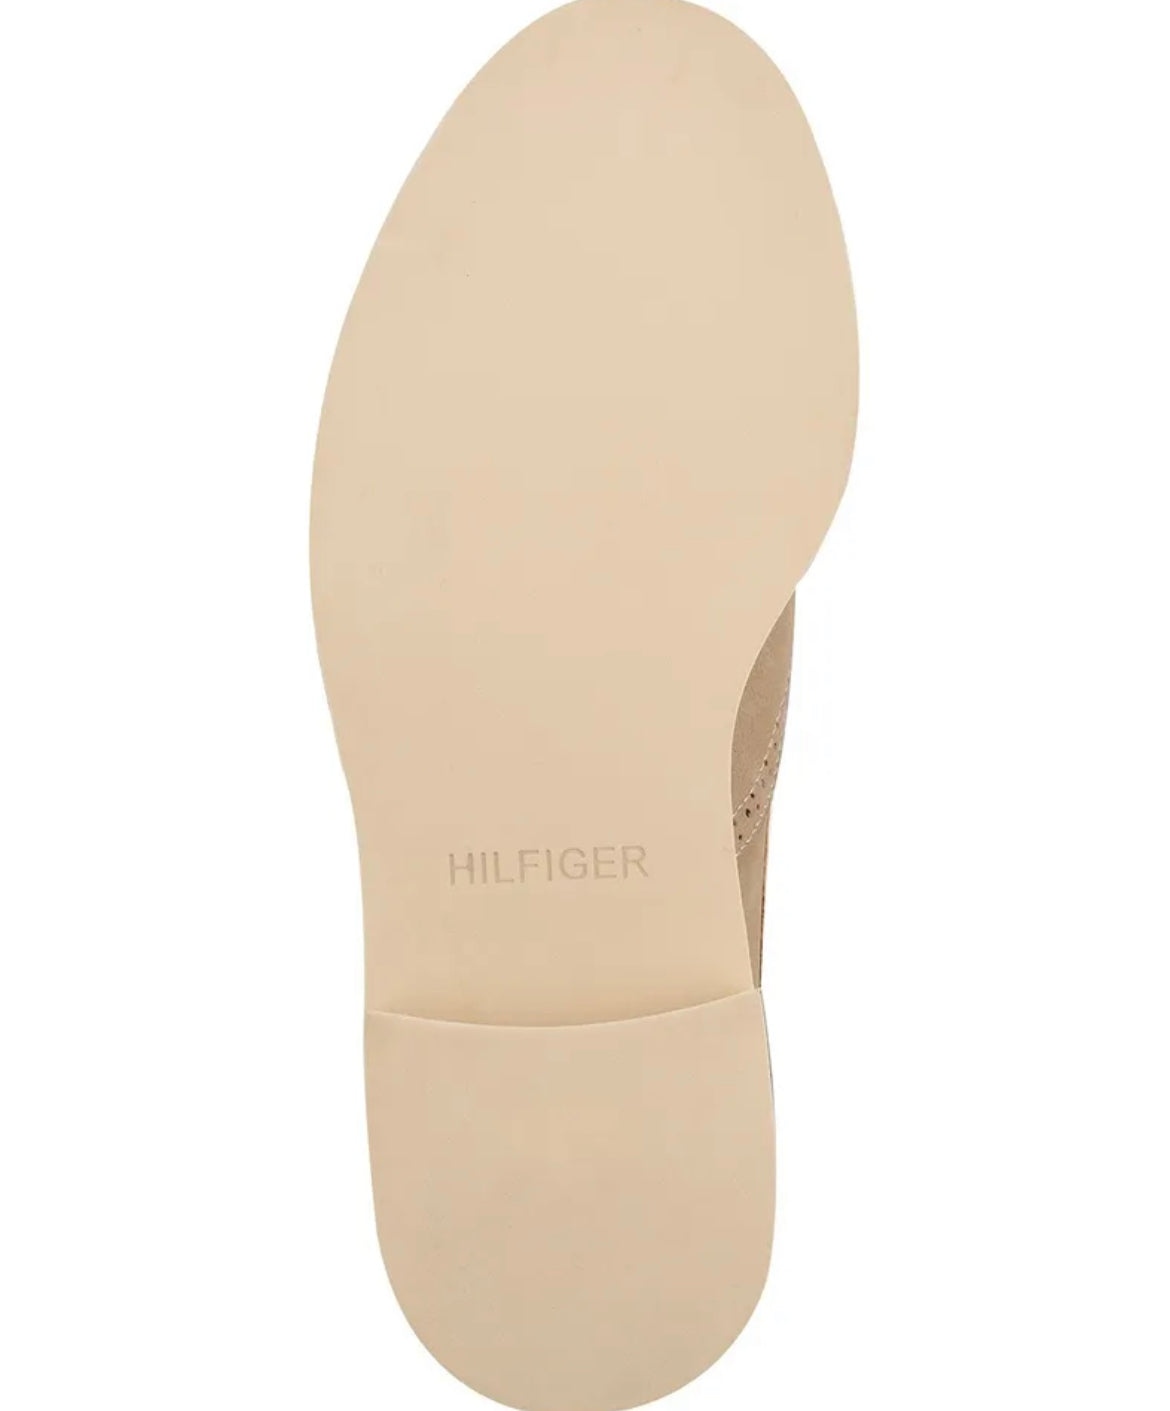 Tommy Hilfiger shoes for men